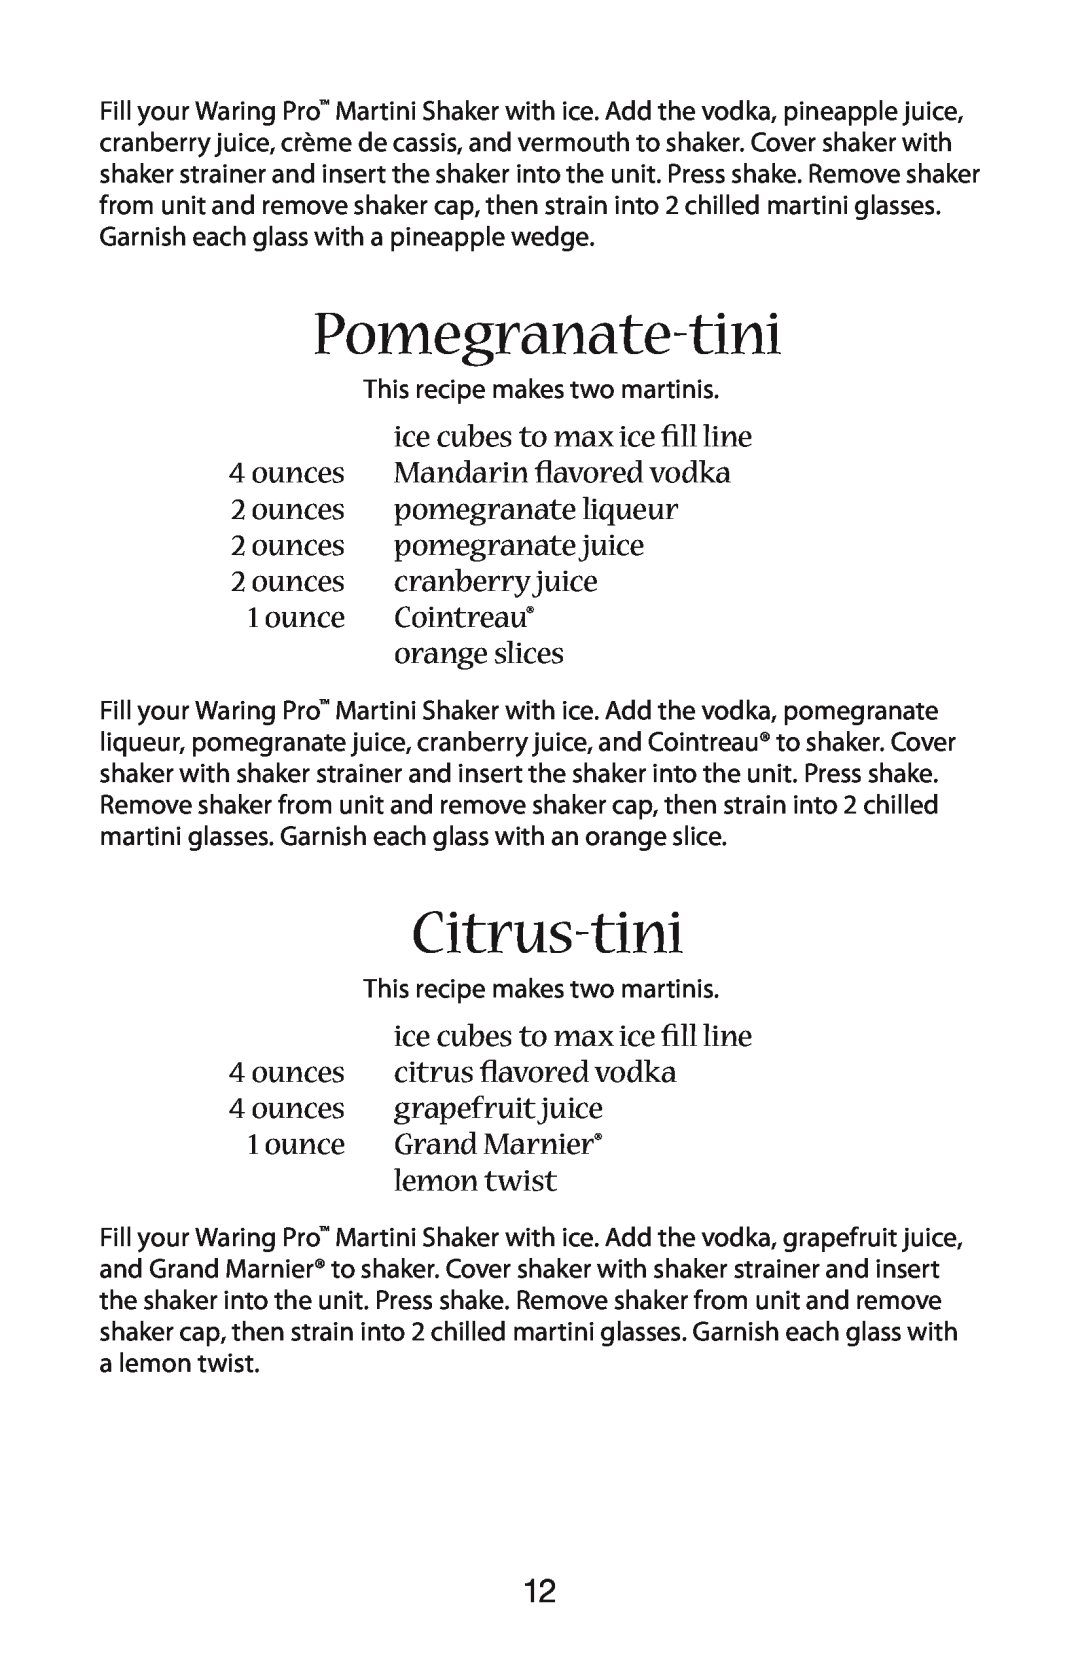 Waring WM007 manual Pomegranate-tini, Citrus-tini 